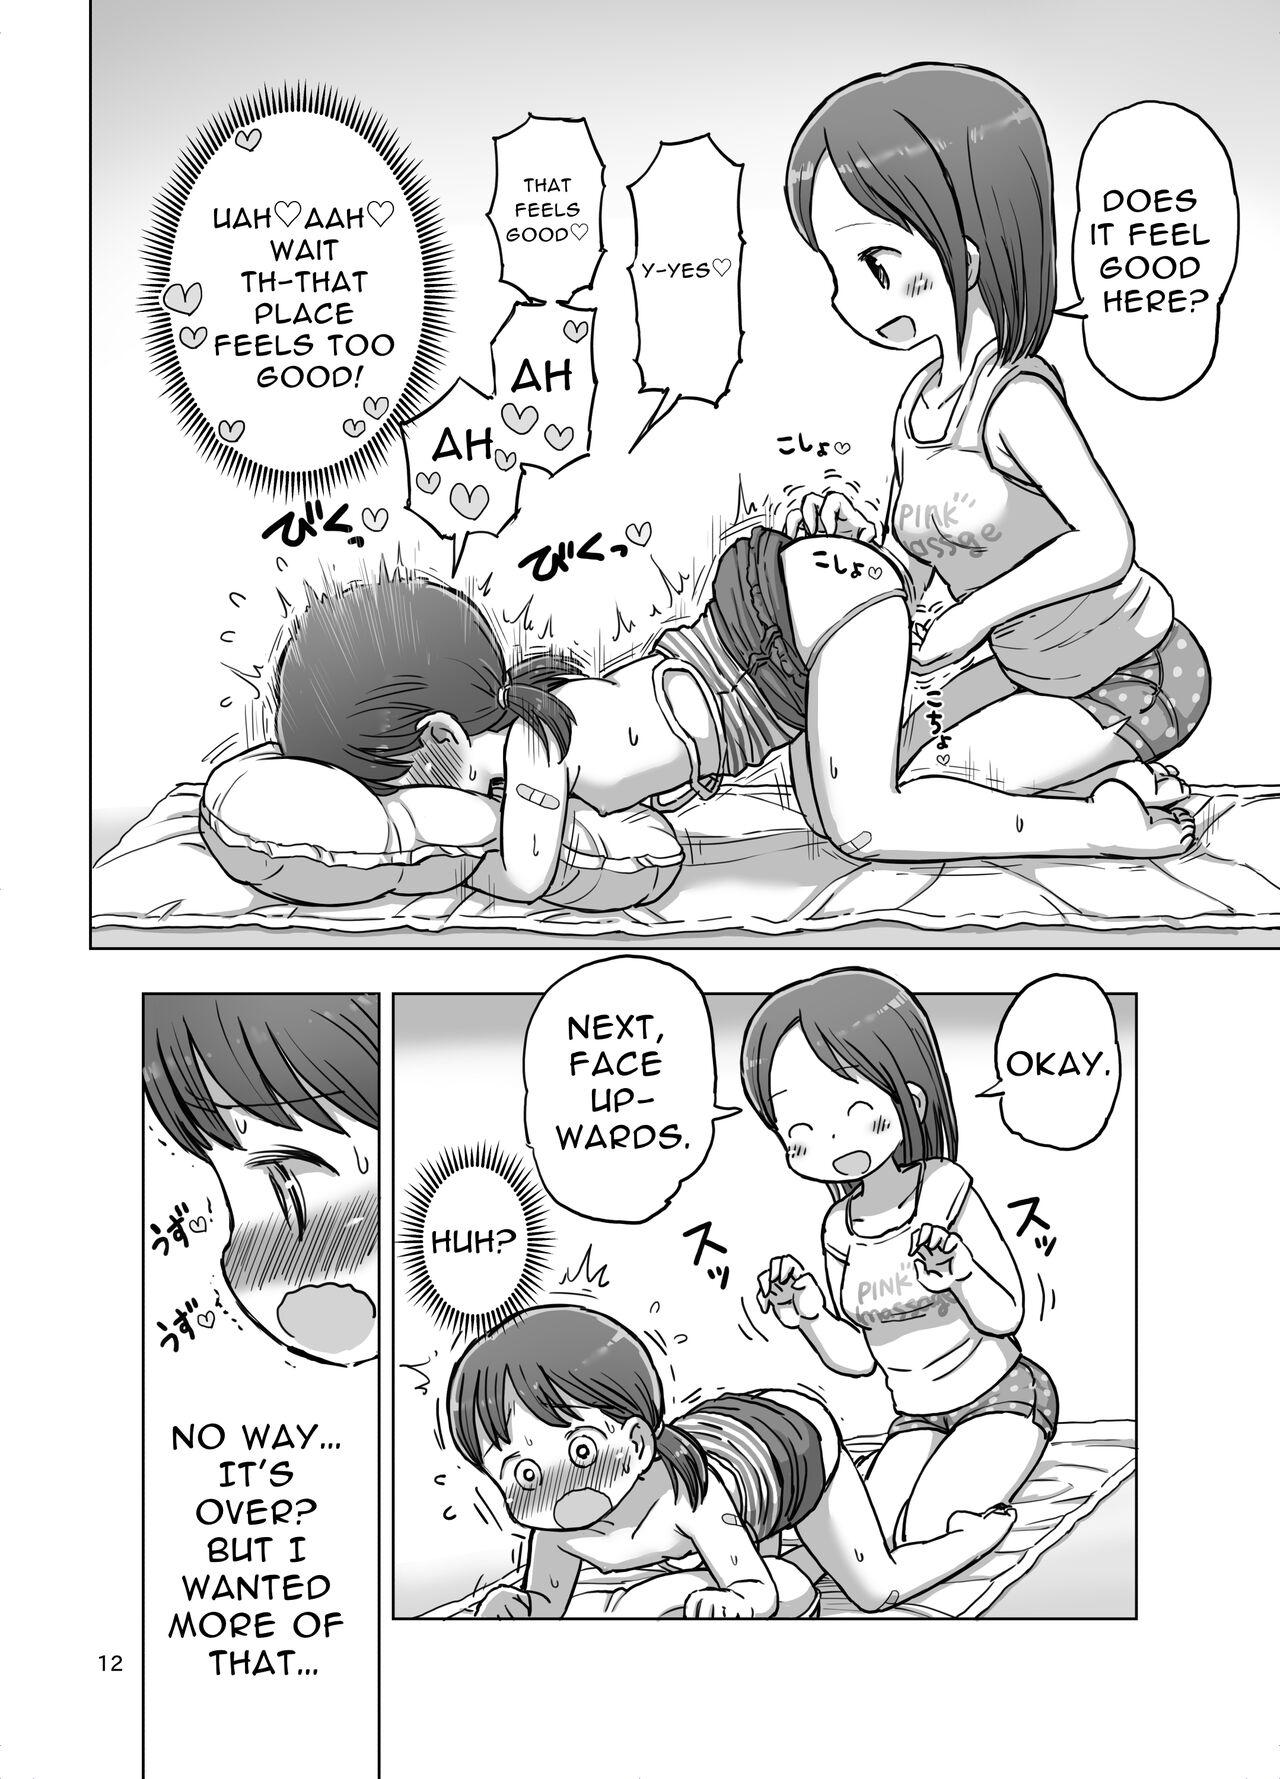 Massage-chuu ni Jirasarete Kossori Onanie Shichau Manga 10